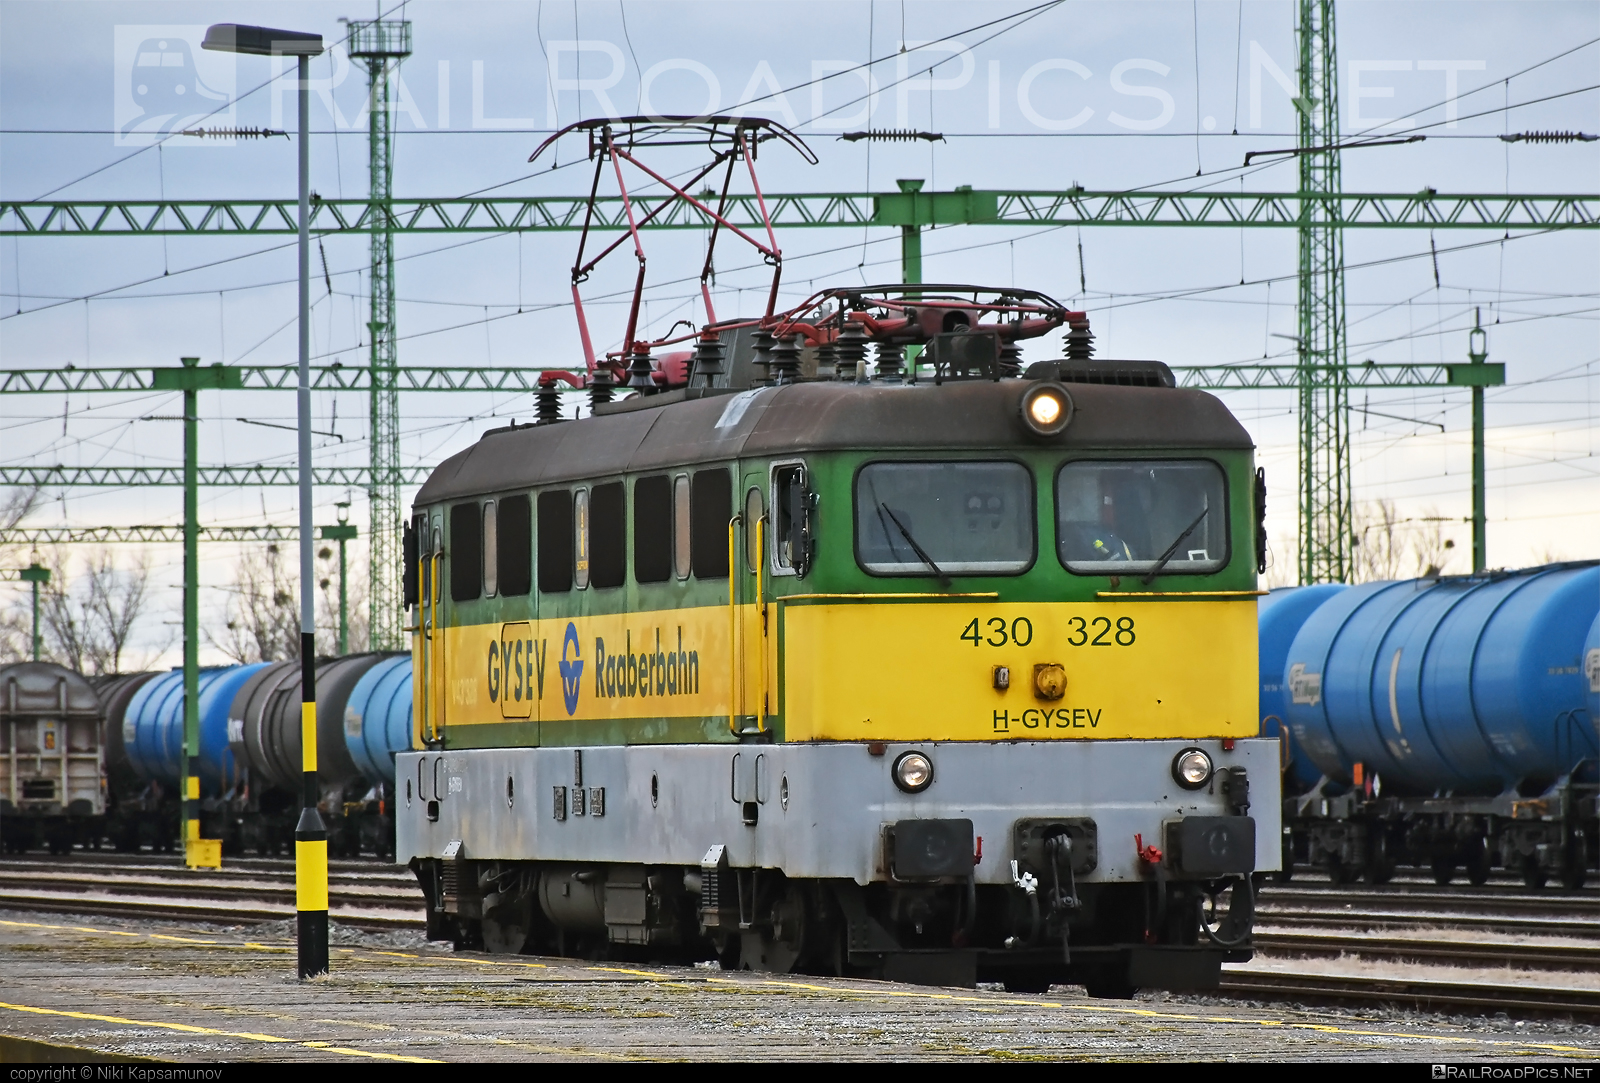 Ganz-MÁVAG VM14-23 - 430 328 operated by GYSEV - Györ-Sopron-Ebenfurti Vasut Részvénytarsasag #ganz43 #ganz431 #ganzmavag #ganzmavag43 #ganzmavag431 #ganzmavagvm1423 #gyorsopronebenfurtivasutreszvenytarsasag #gysev #raaberbahn #v43locomotive